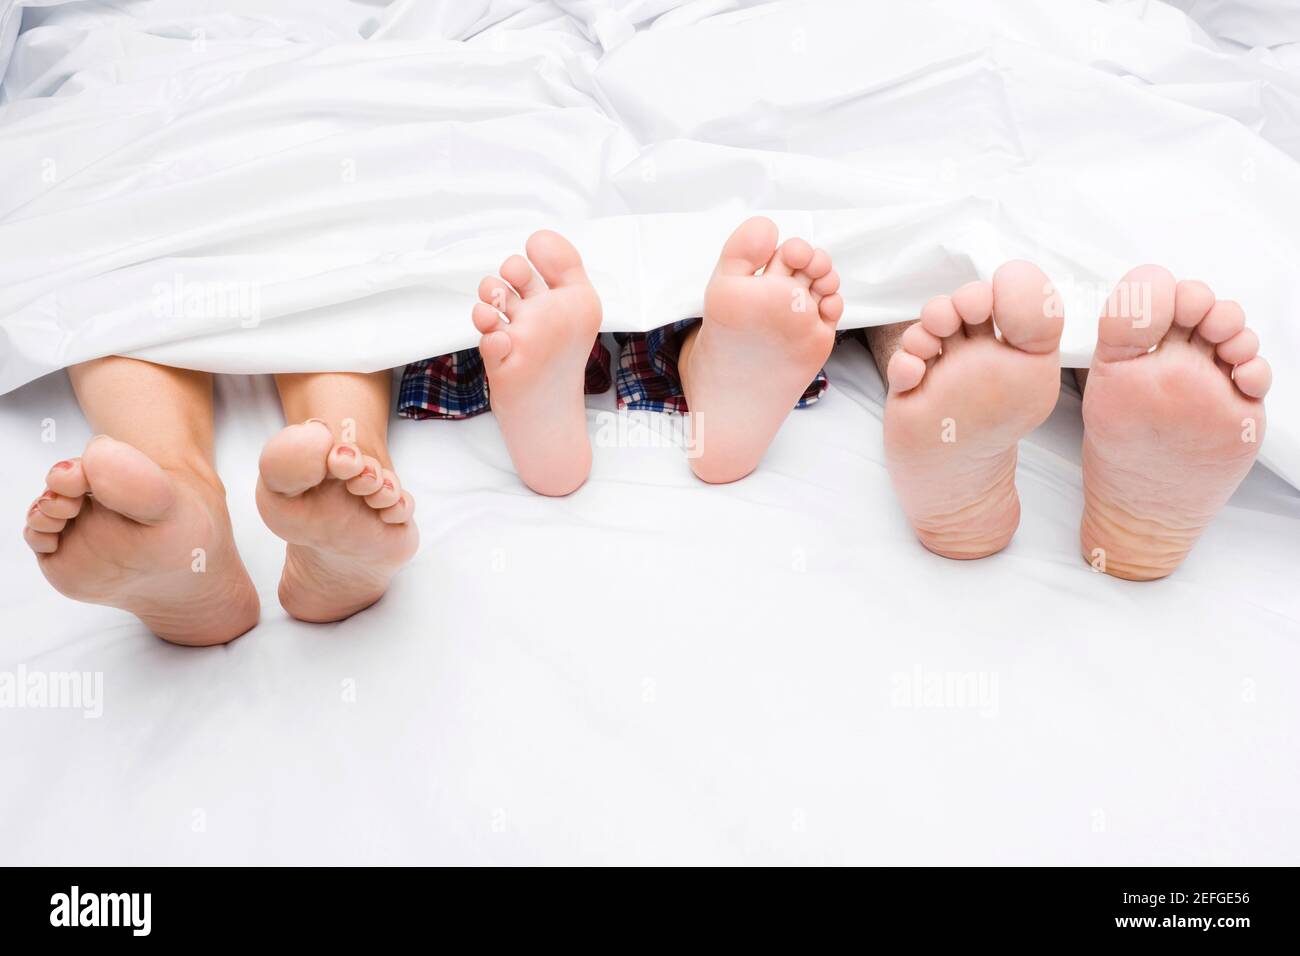 Primo piano di un coupleÅ½s piedi con il loro bambino sul letto Foto Stock